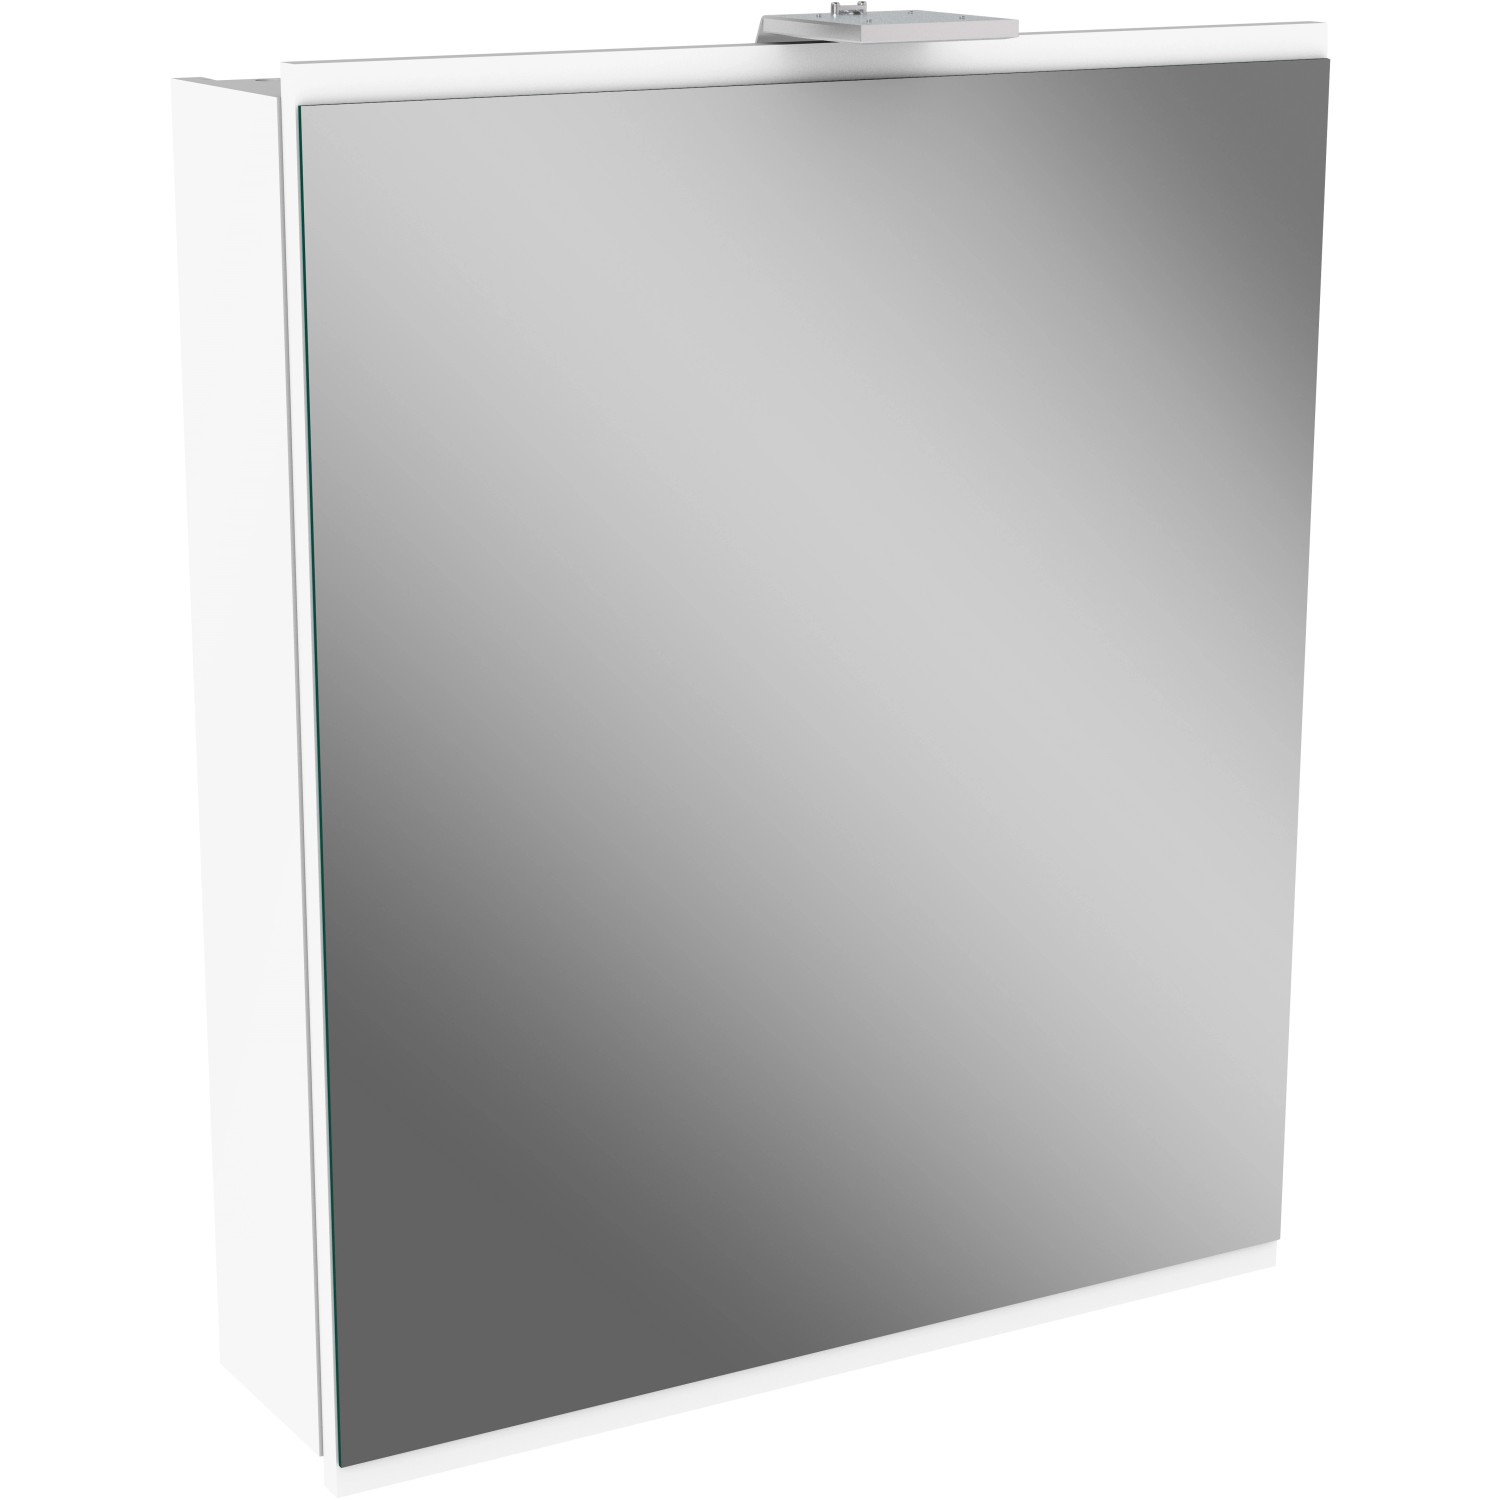 Fackelmann Spiegelschrank Lima Weiß 60 cm mit Softclose Türen